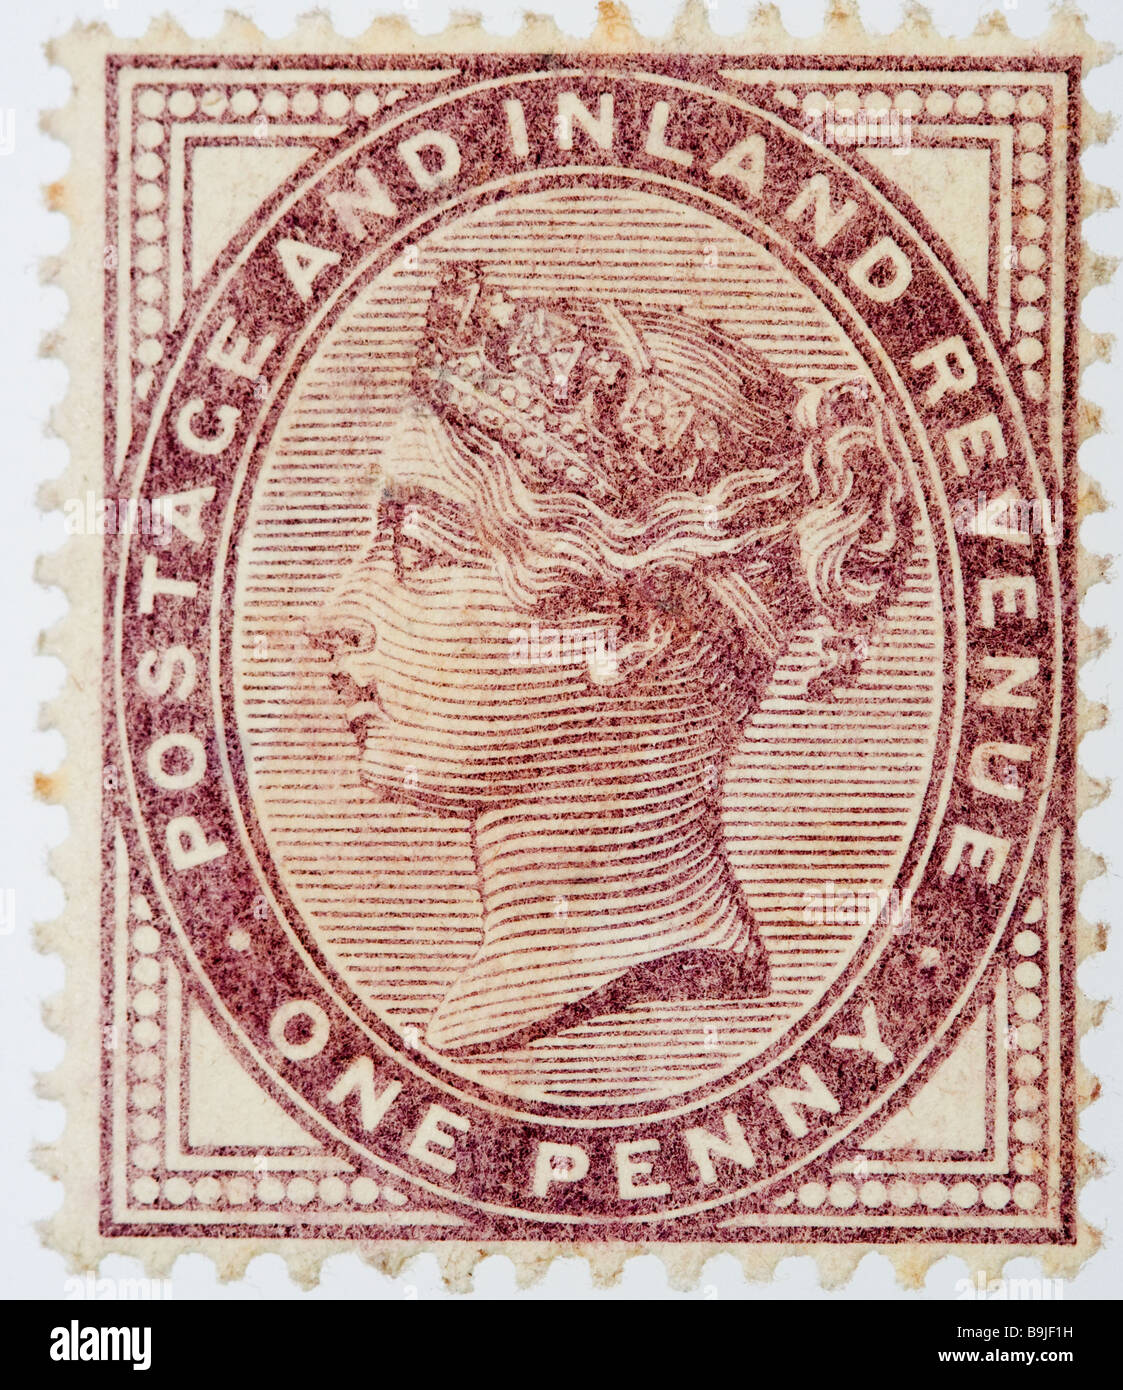 Gros plan d'un penny, 1d, lilas Victorian British postal timbre sur fond blanc émis vers 1880. Inutilisé. SG 171 menthe. Banque D'Images